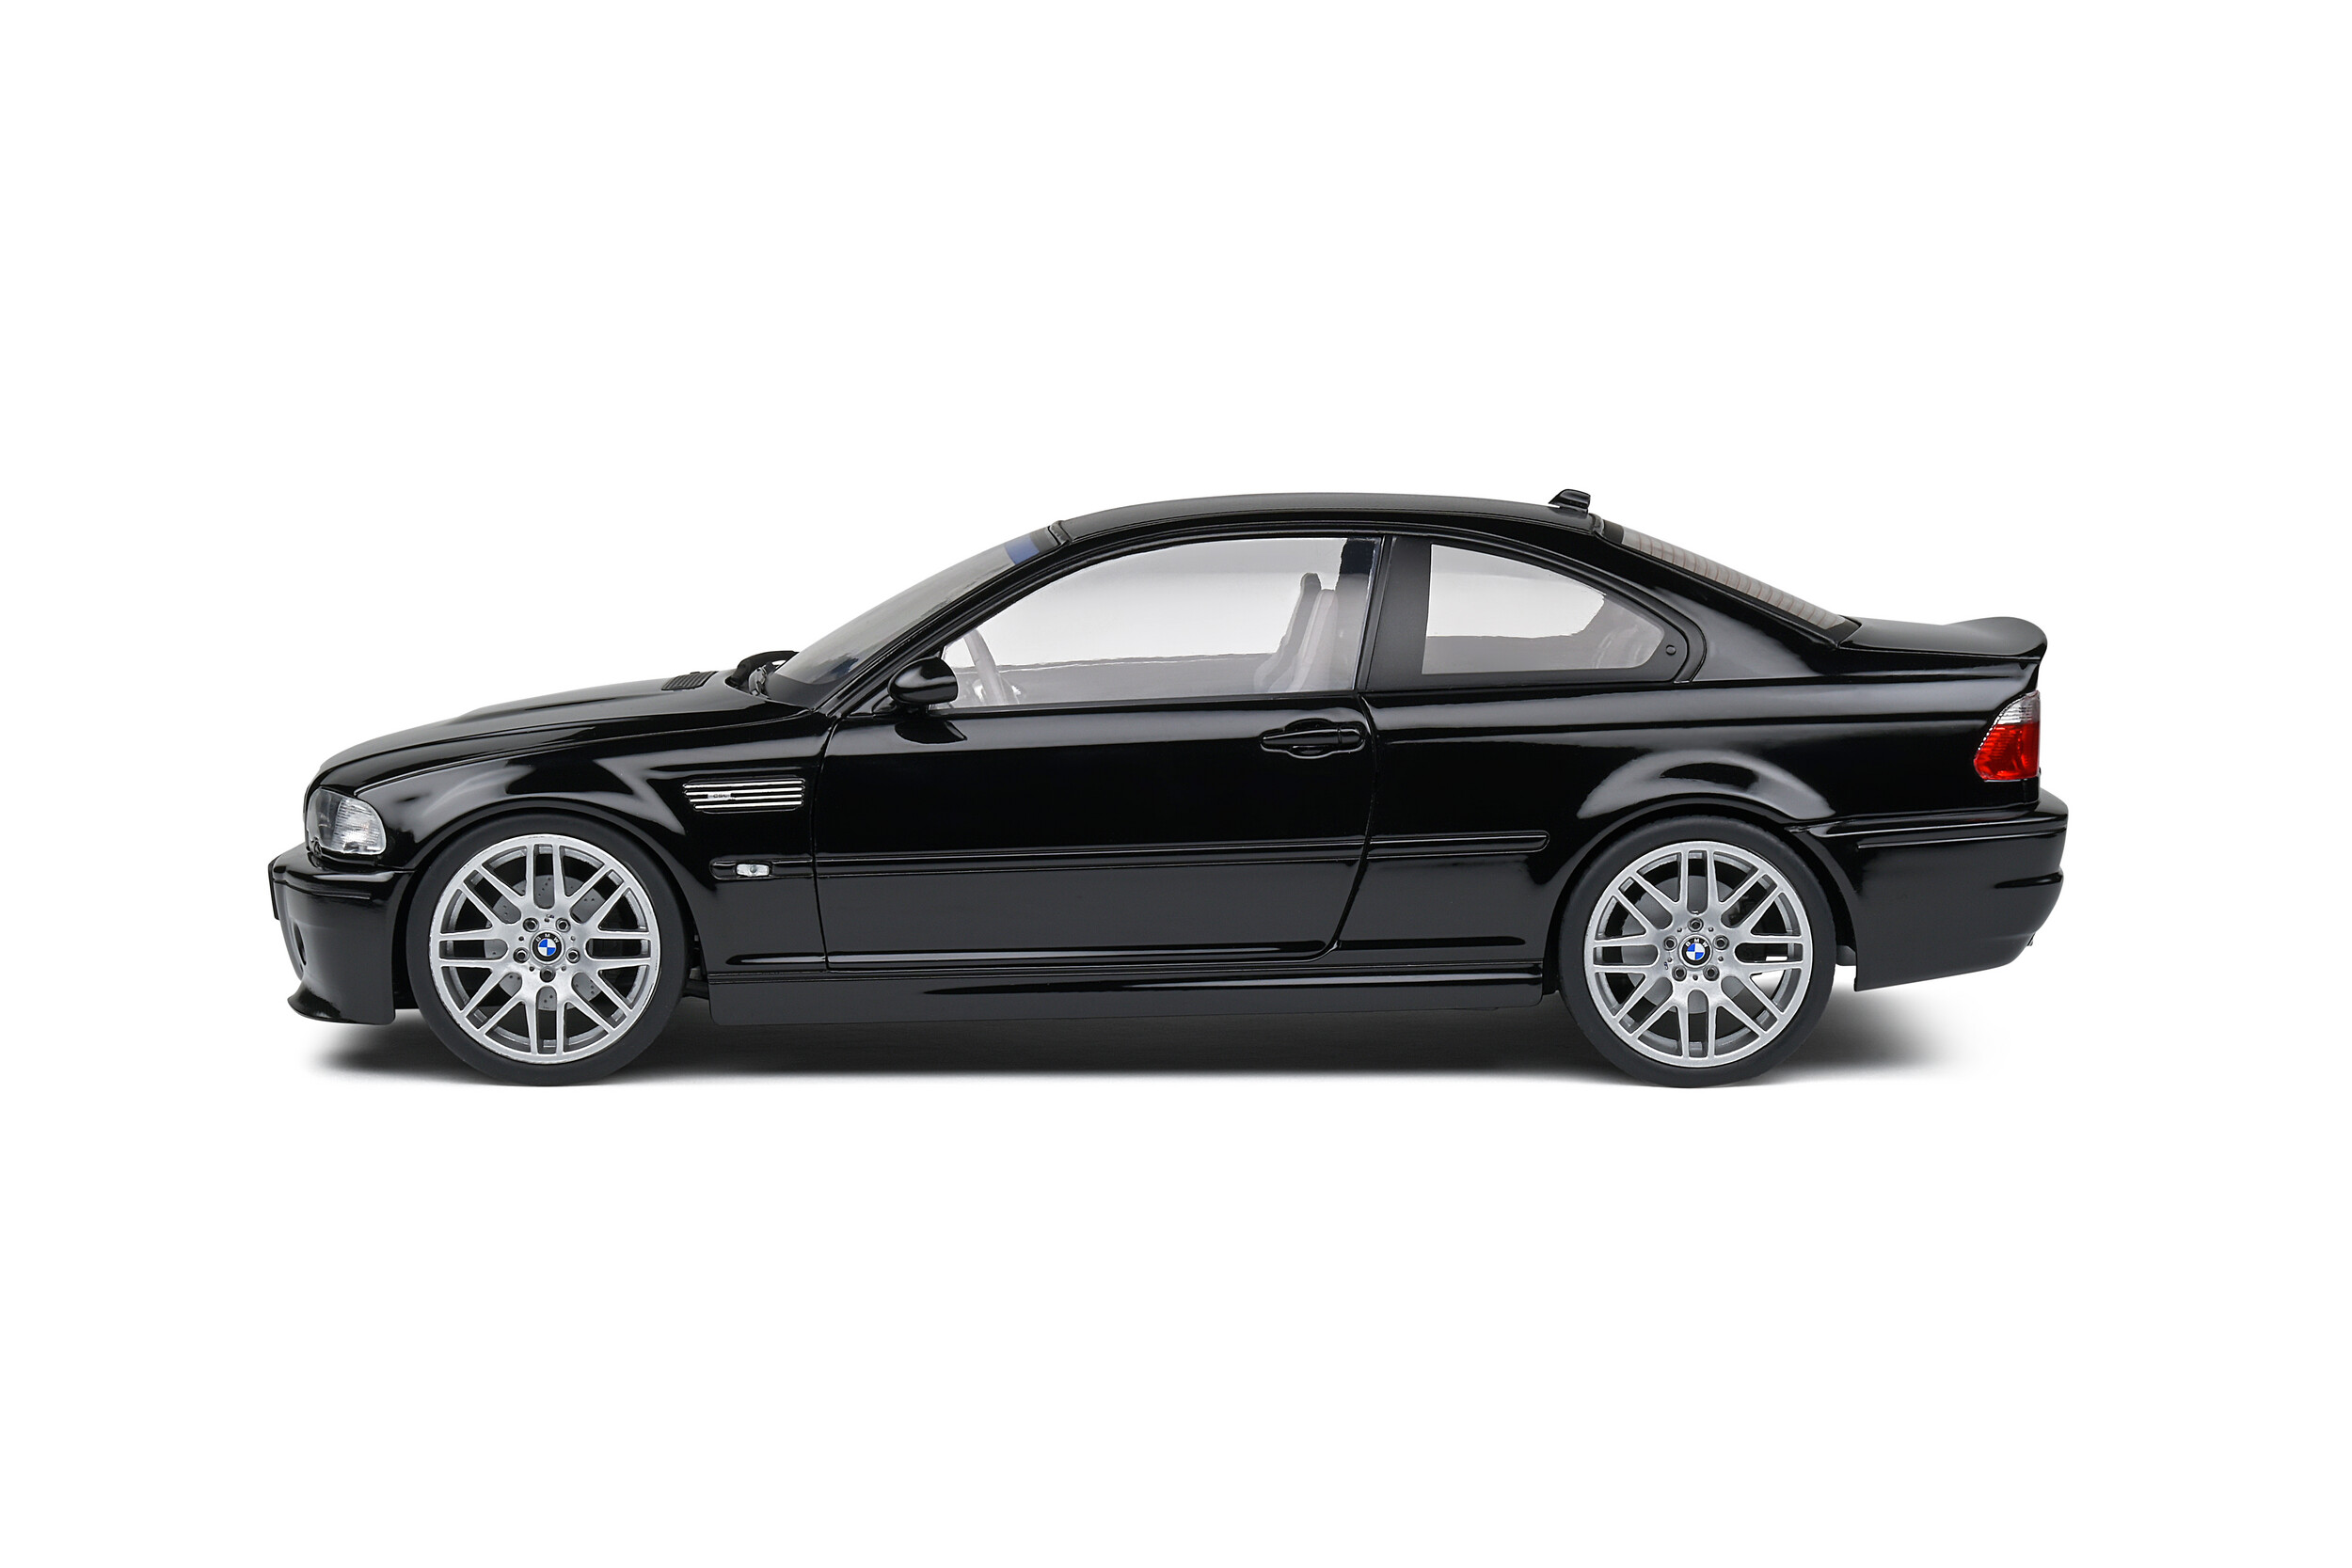 BMW M3 E46 CSL Black Solido 1/18